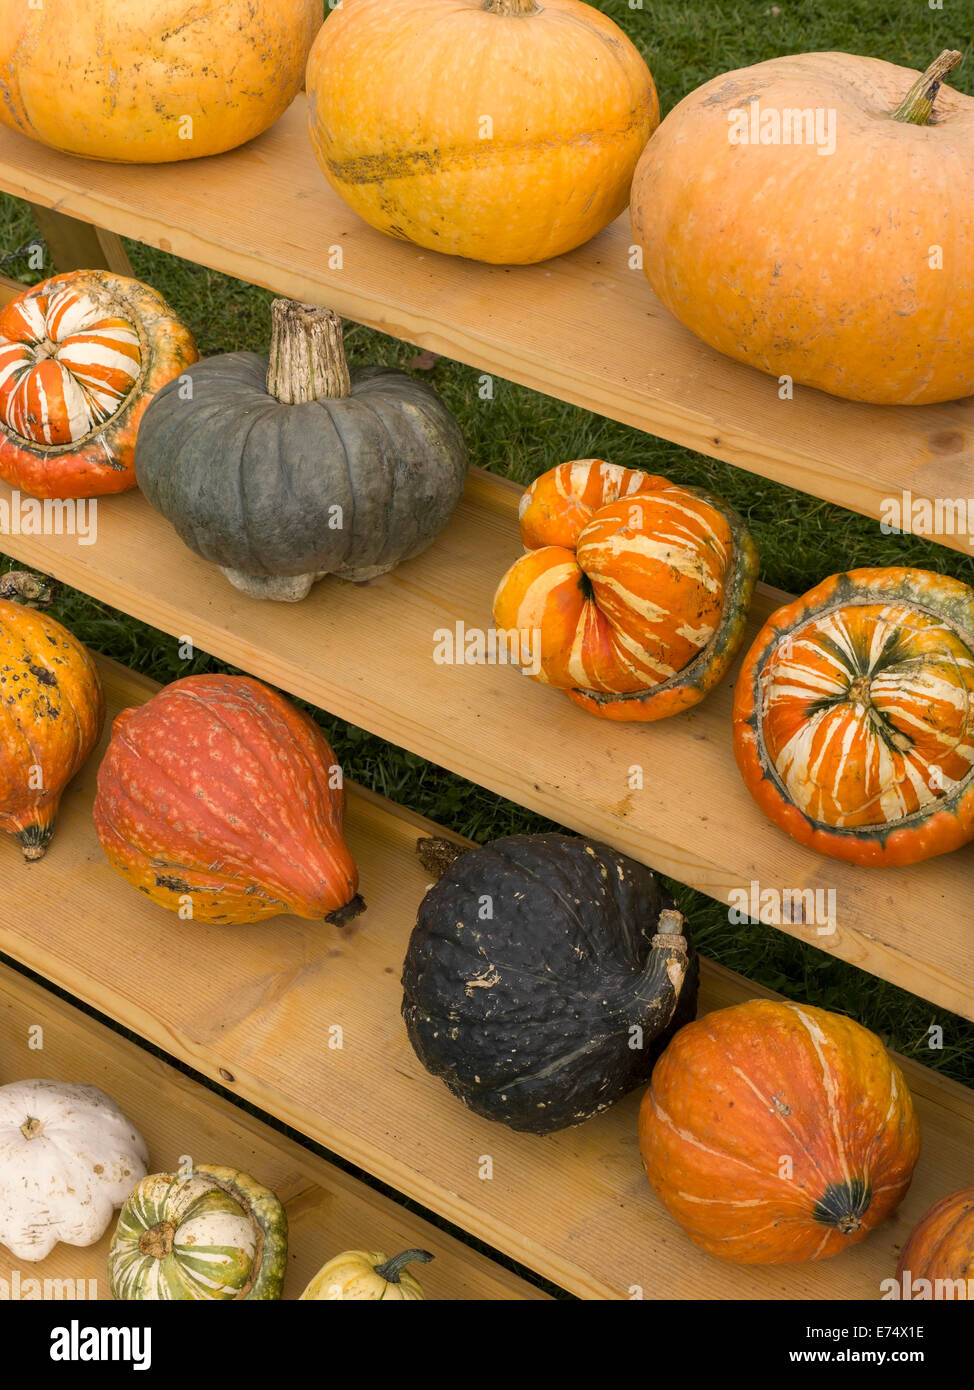 Pantalla de otoño de calabazas y calabazas ornamentales en estantes de madera. Foto de stock